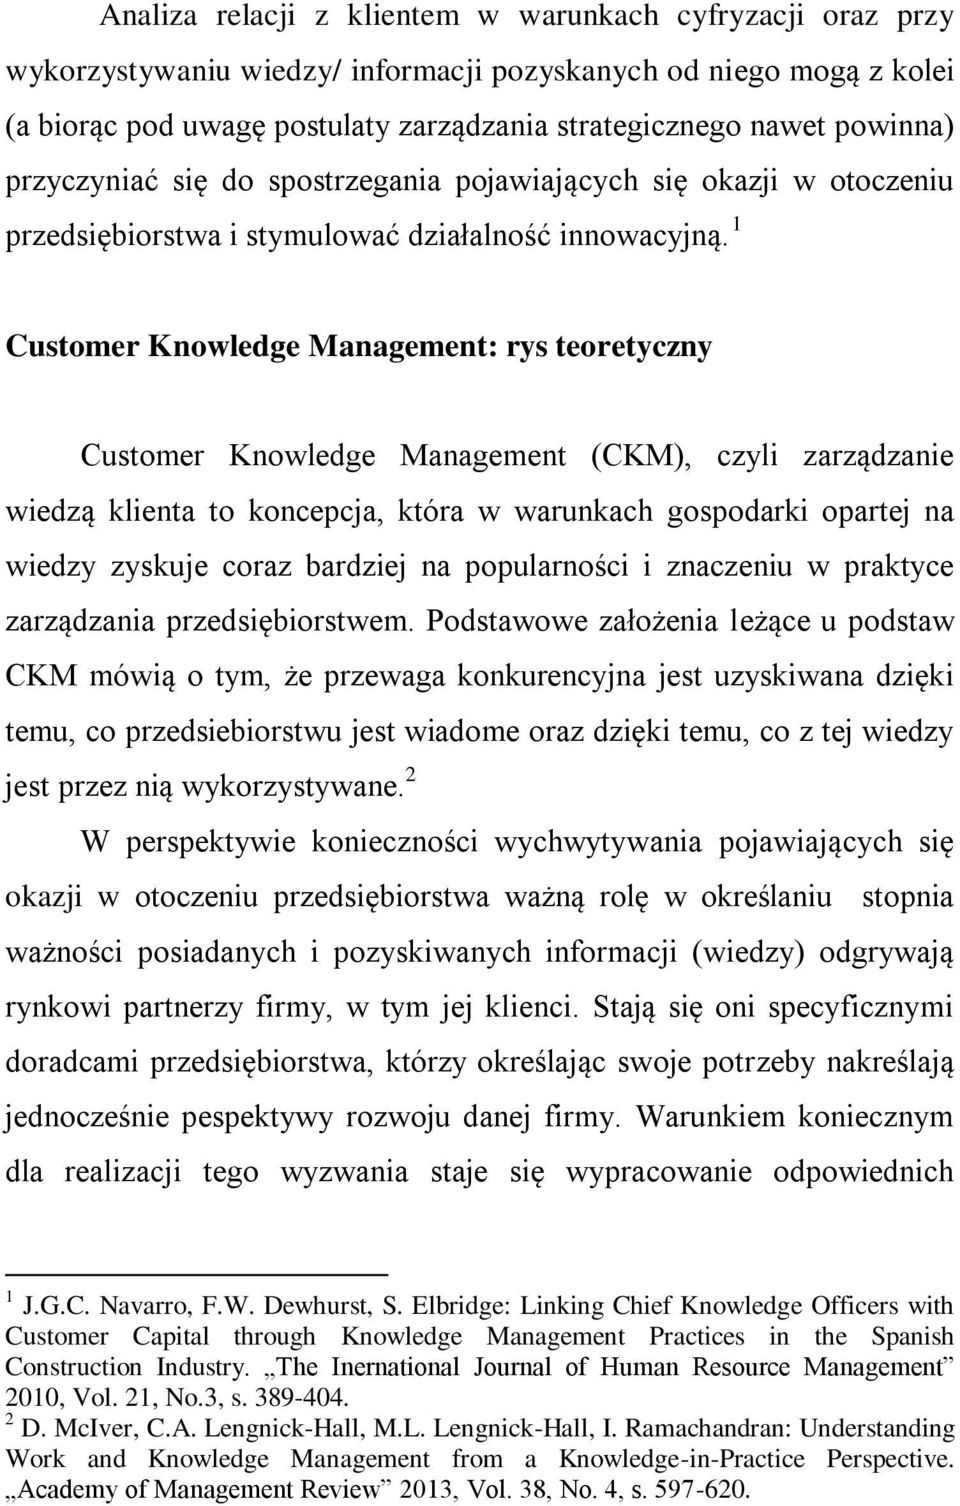 1 Customer Knowledge Management: rys teoretyczny Customer Knowledge Management (CKM), czyli zarządzanie wiedzą klienta to koncepcja, która w warunkach gospodarki opartej na wiedzy zyskuje coraz